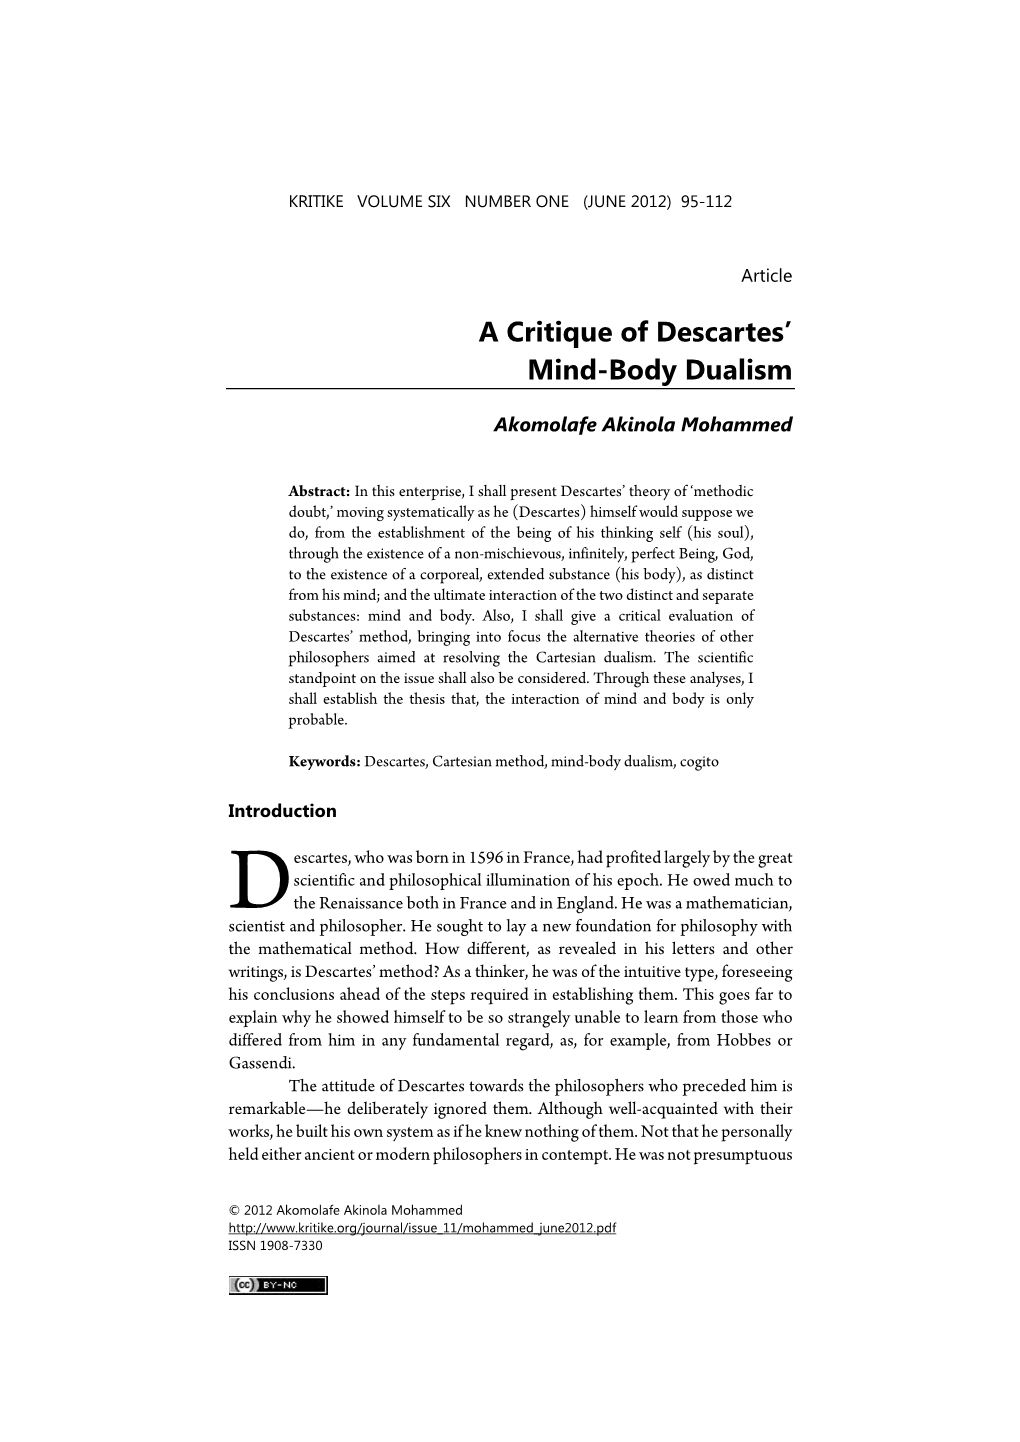 A Critique of Descartes' Mind-Body Dualism